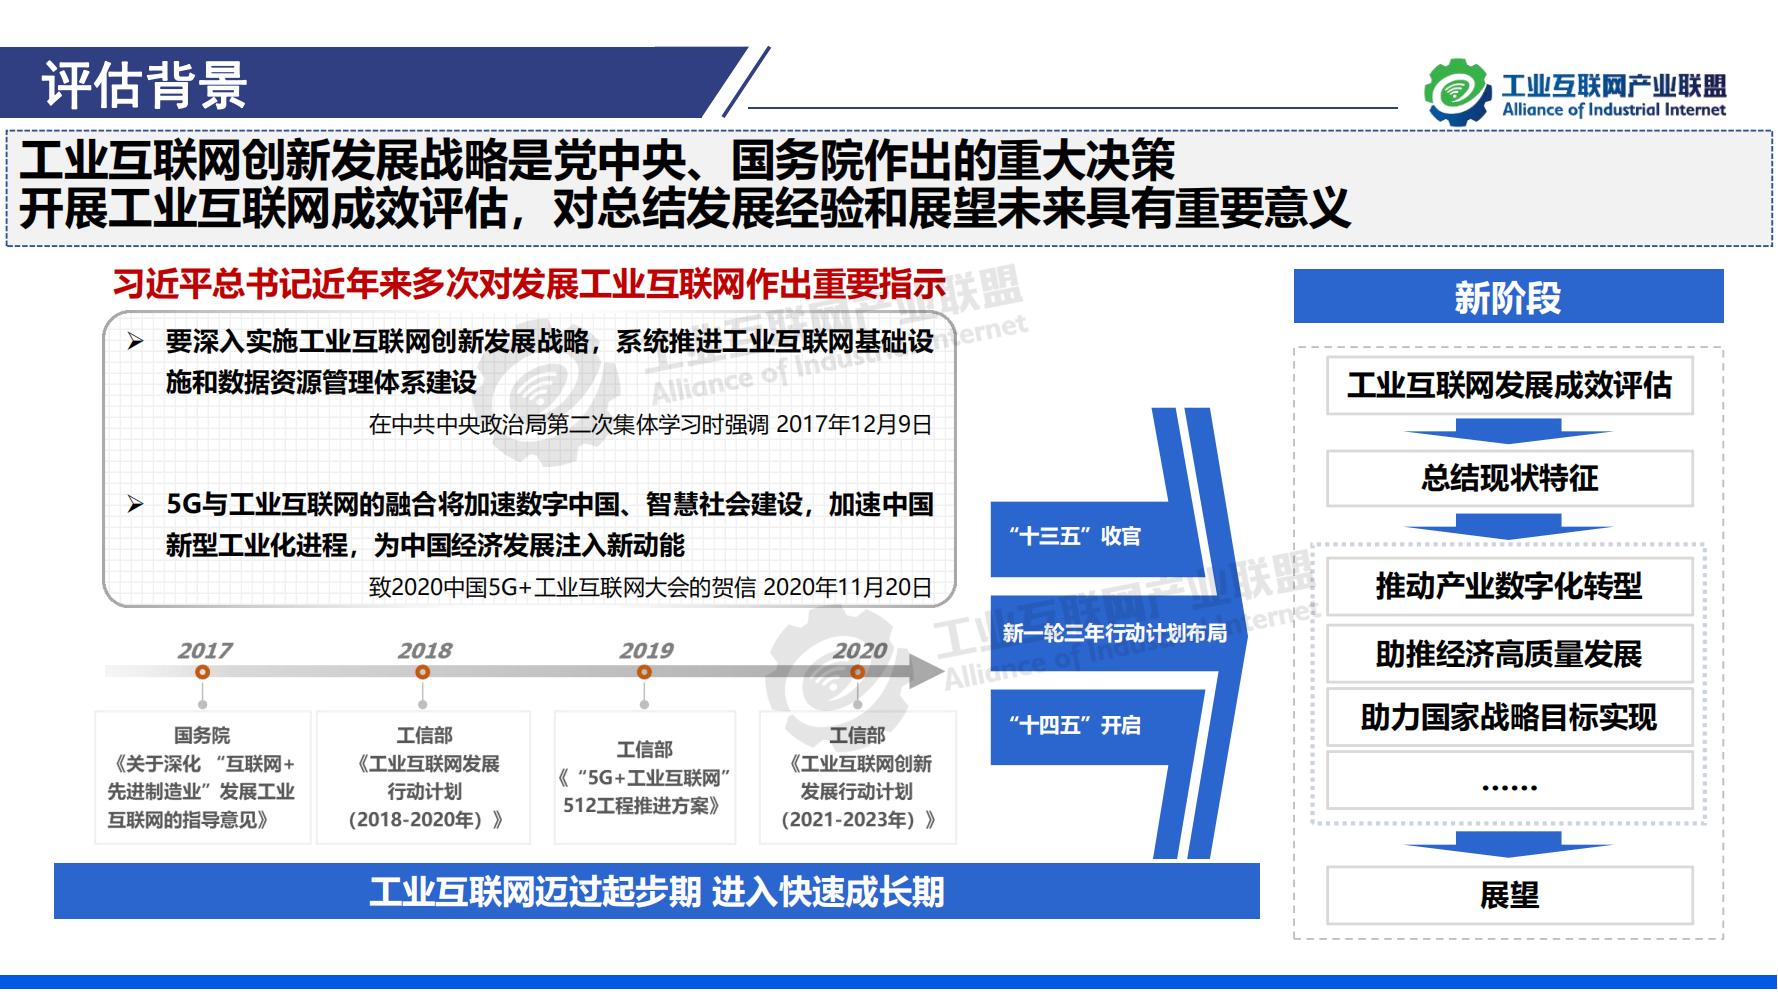 1-中国工业互联网发展成效评估报告-水印_02.jpg